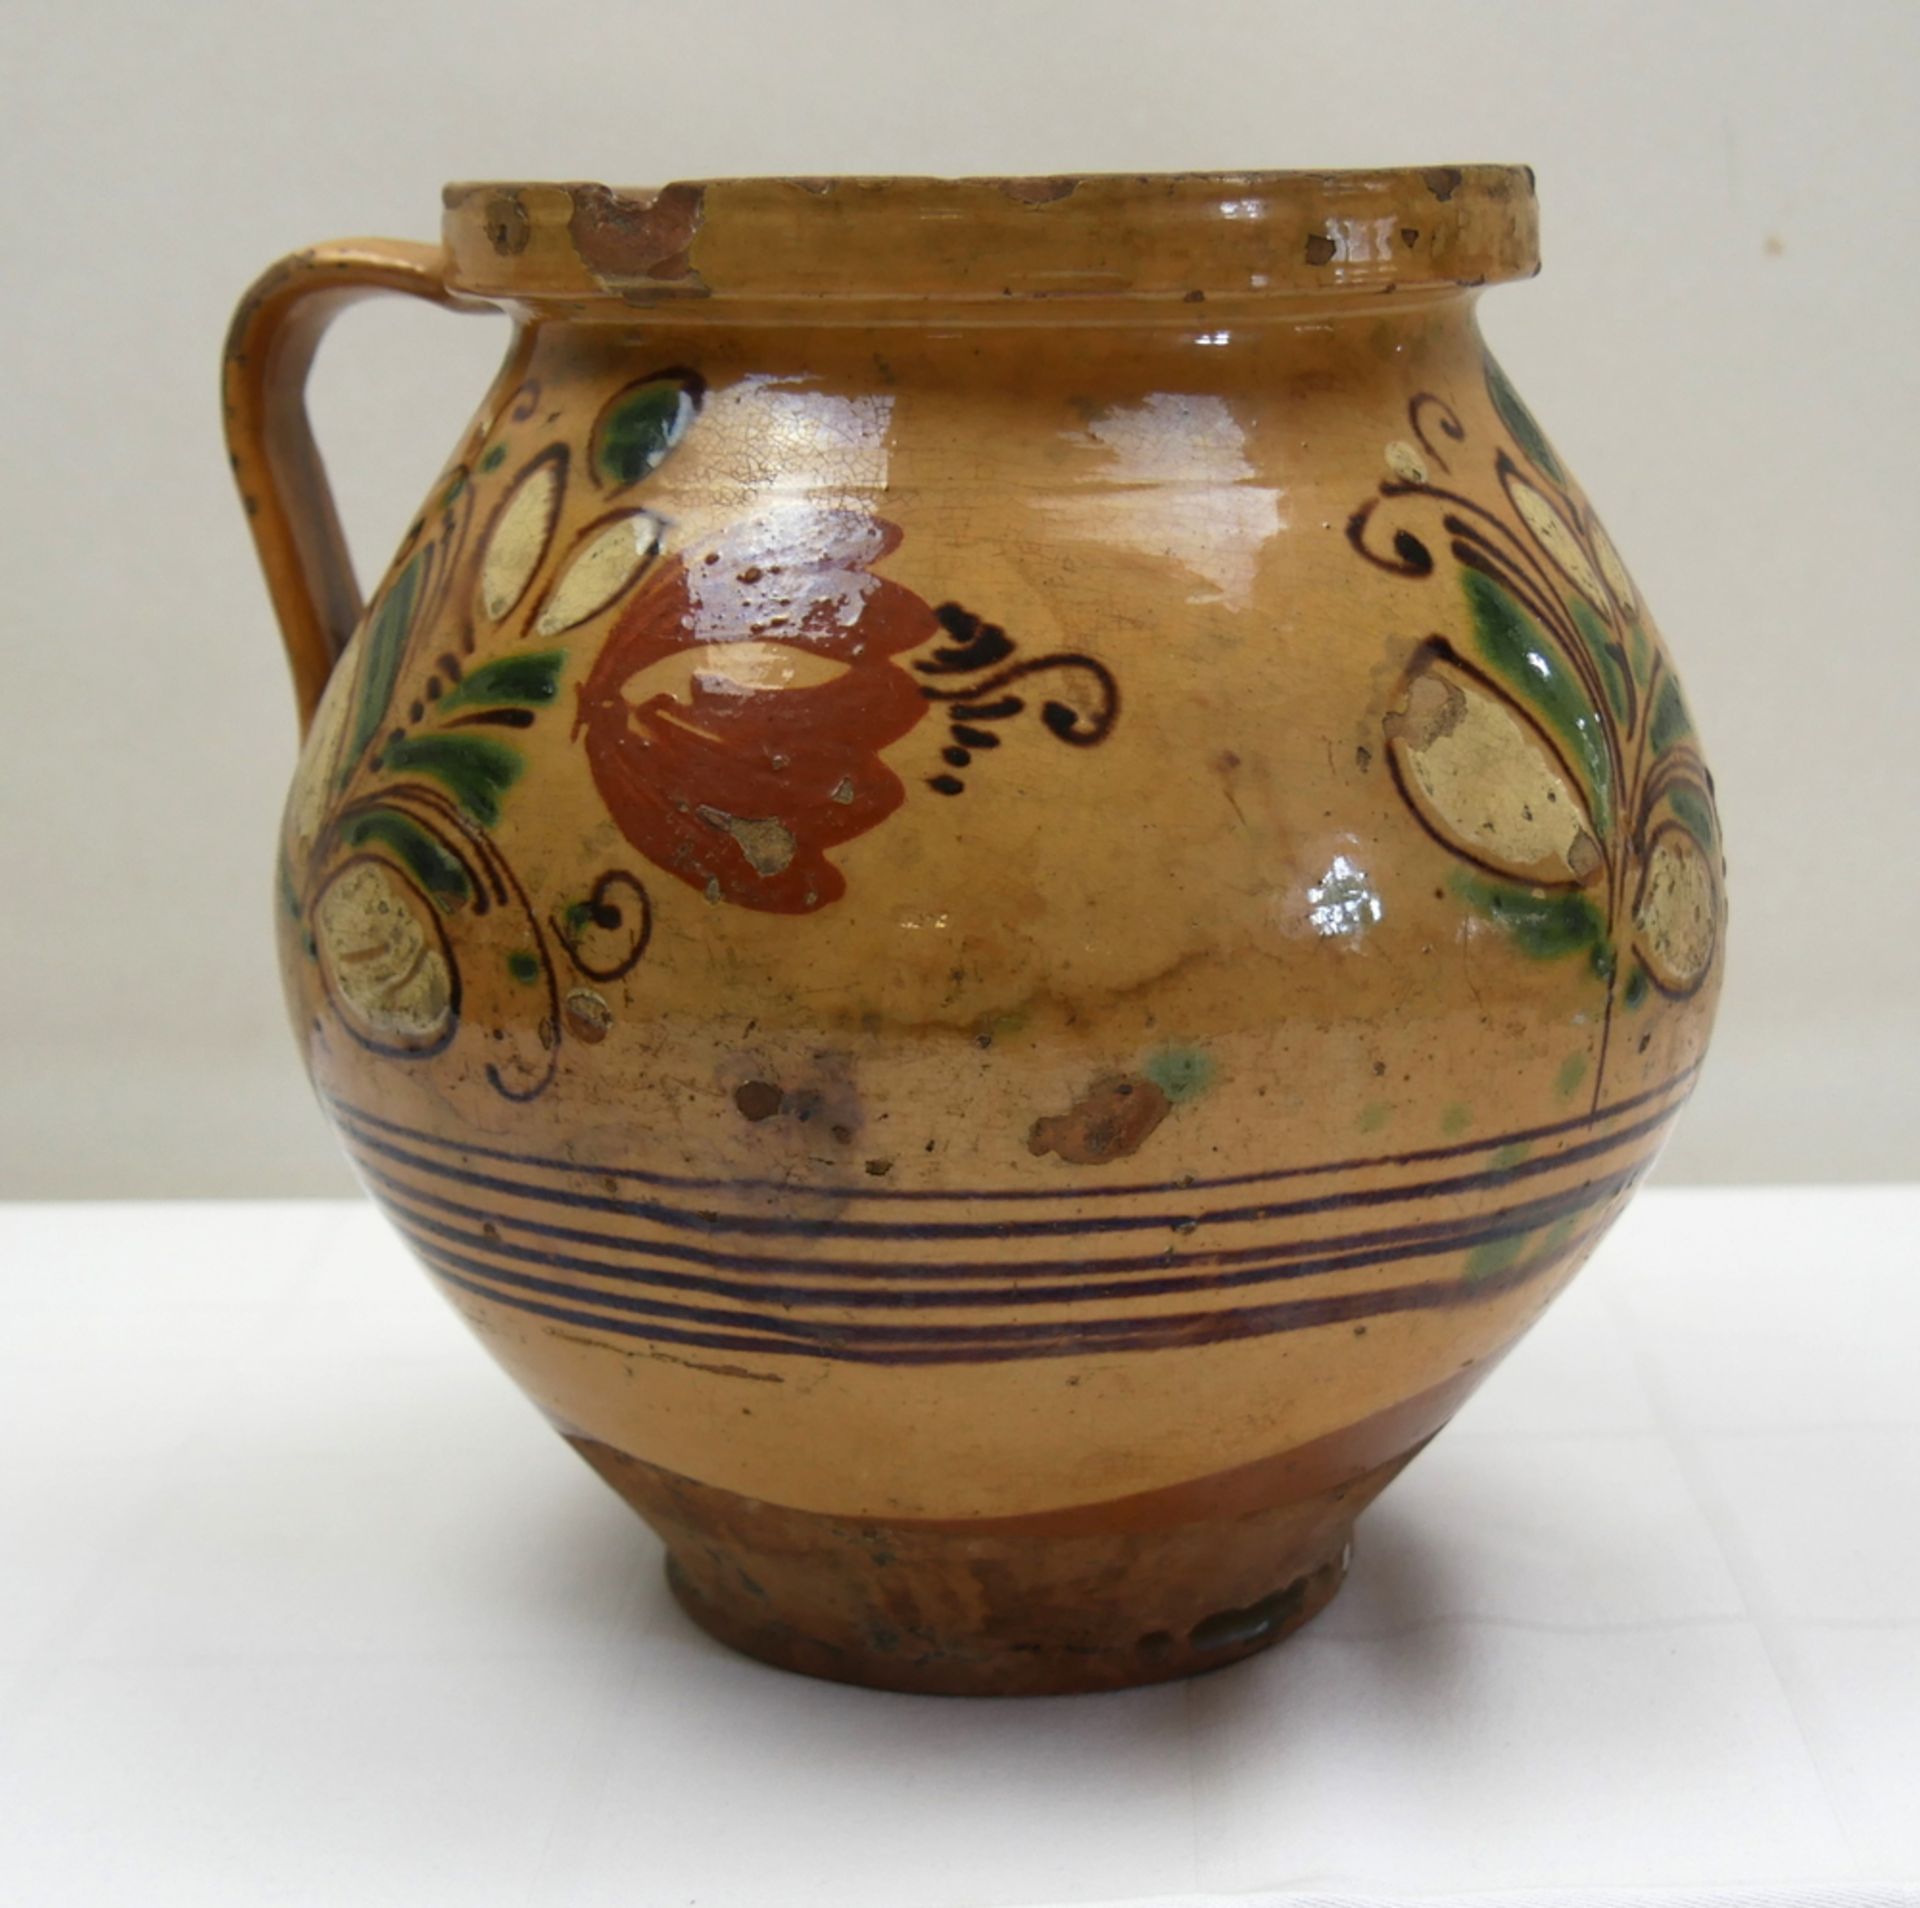 Steinkrug Keramik mit Henkel (1 fehlt!) und floraler bemalung. Wohl um 1900. Handbemalt. Höhe ca. 21